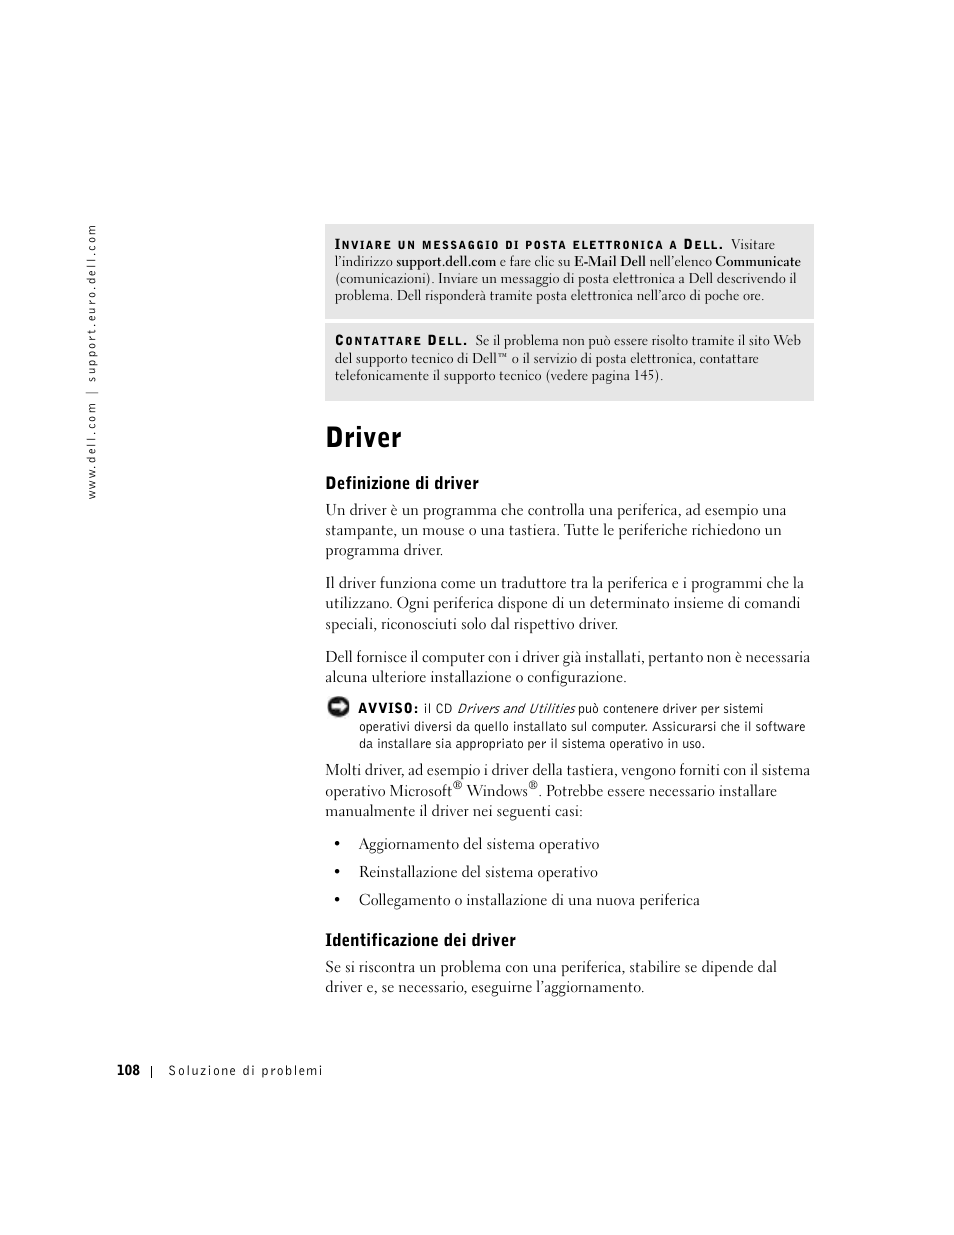 Driver, Definizione di driver, Identificazione dei driver | Dell Inspiron 8500 Manuale d'uso | Pagina 108 / 168